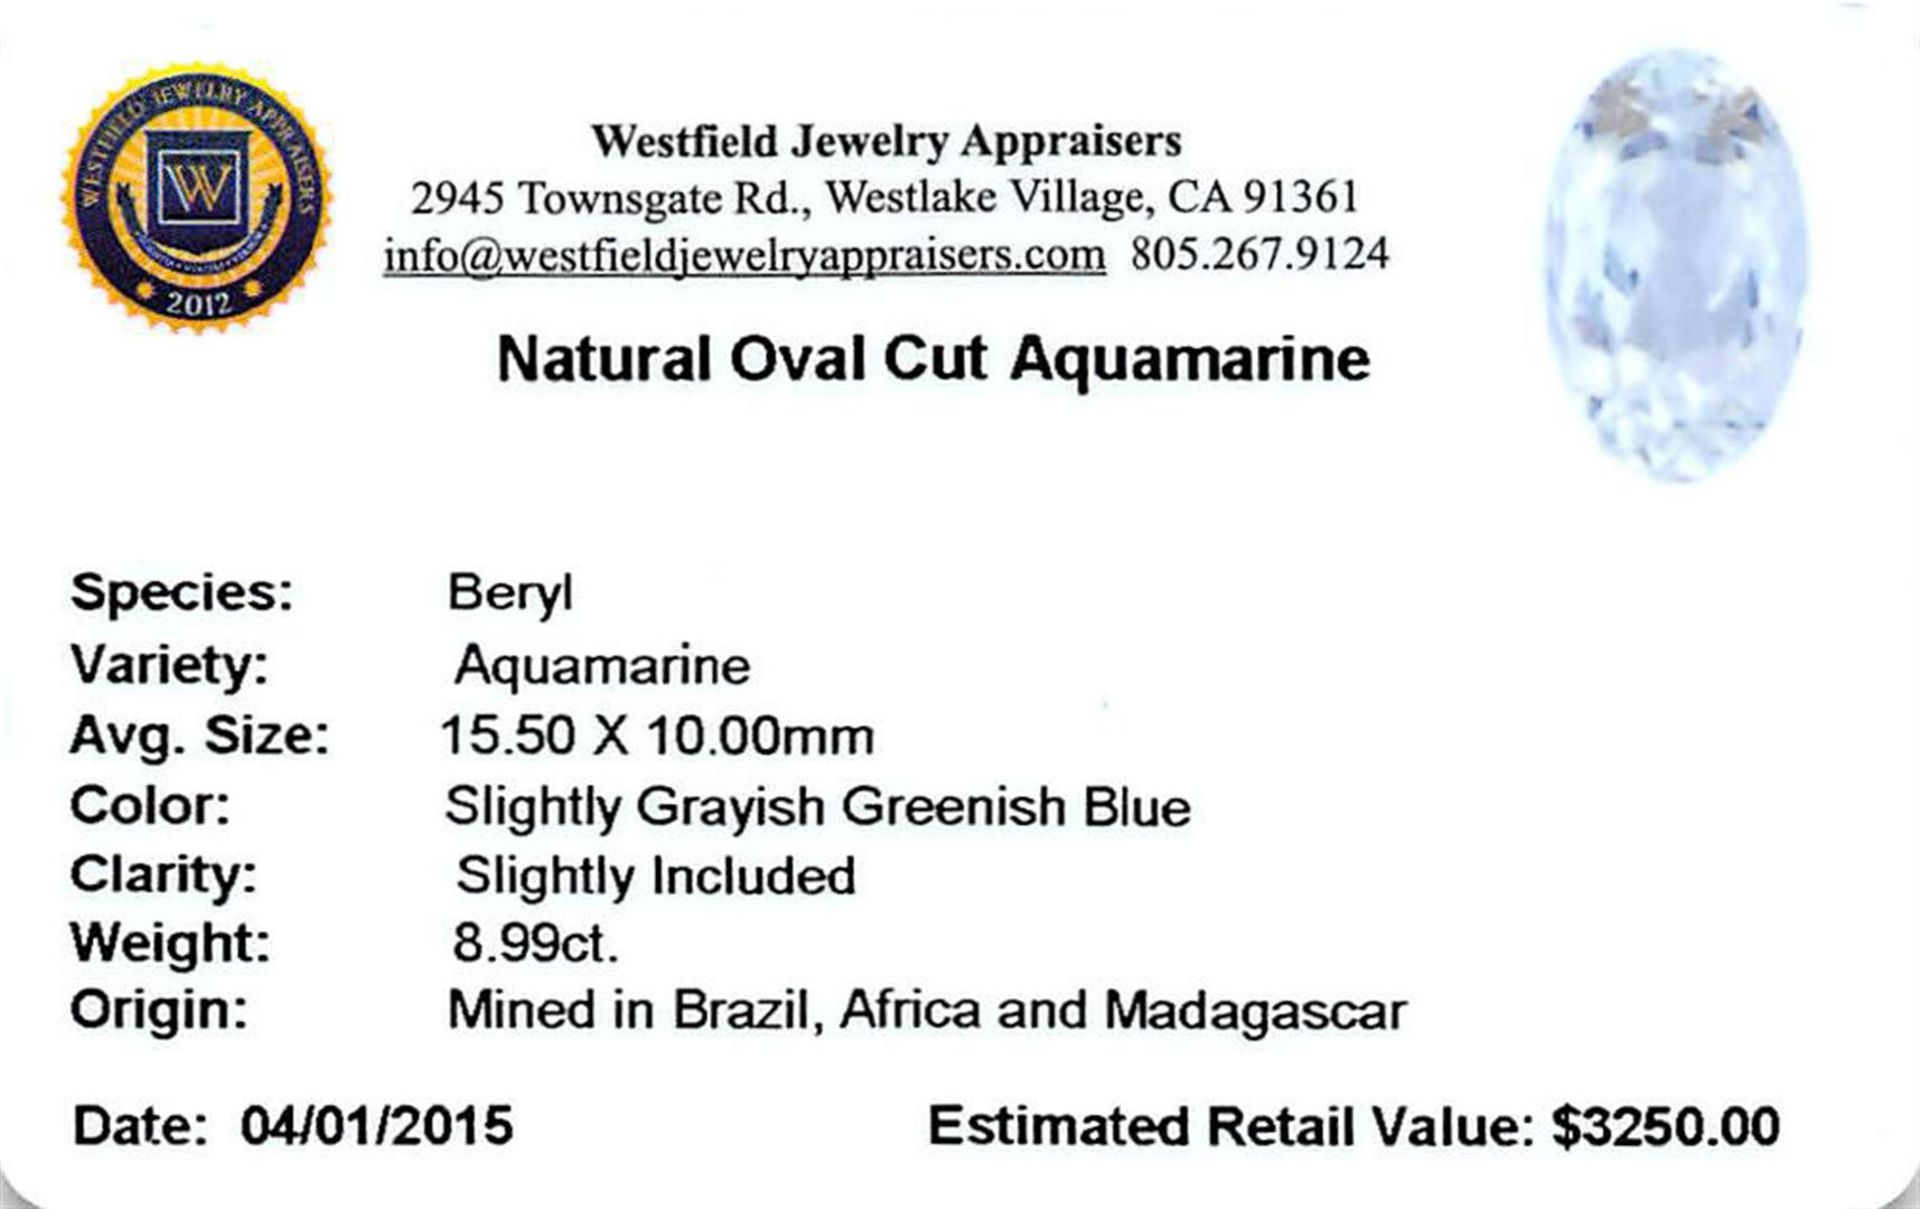 8.44 ctw Oval Aquamarine Parcel - Image 2 of 2